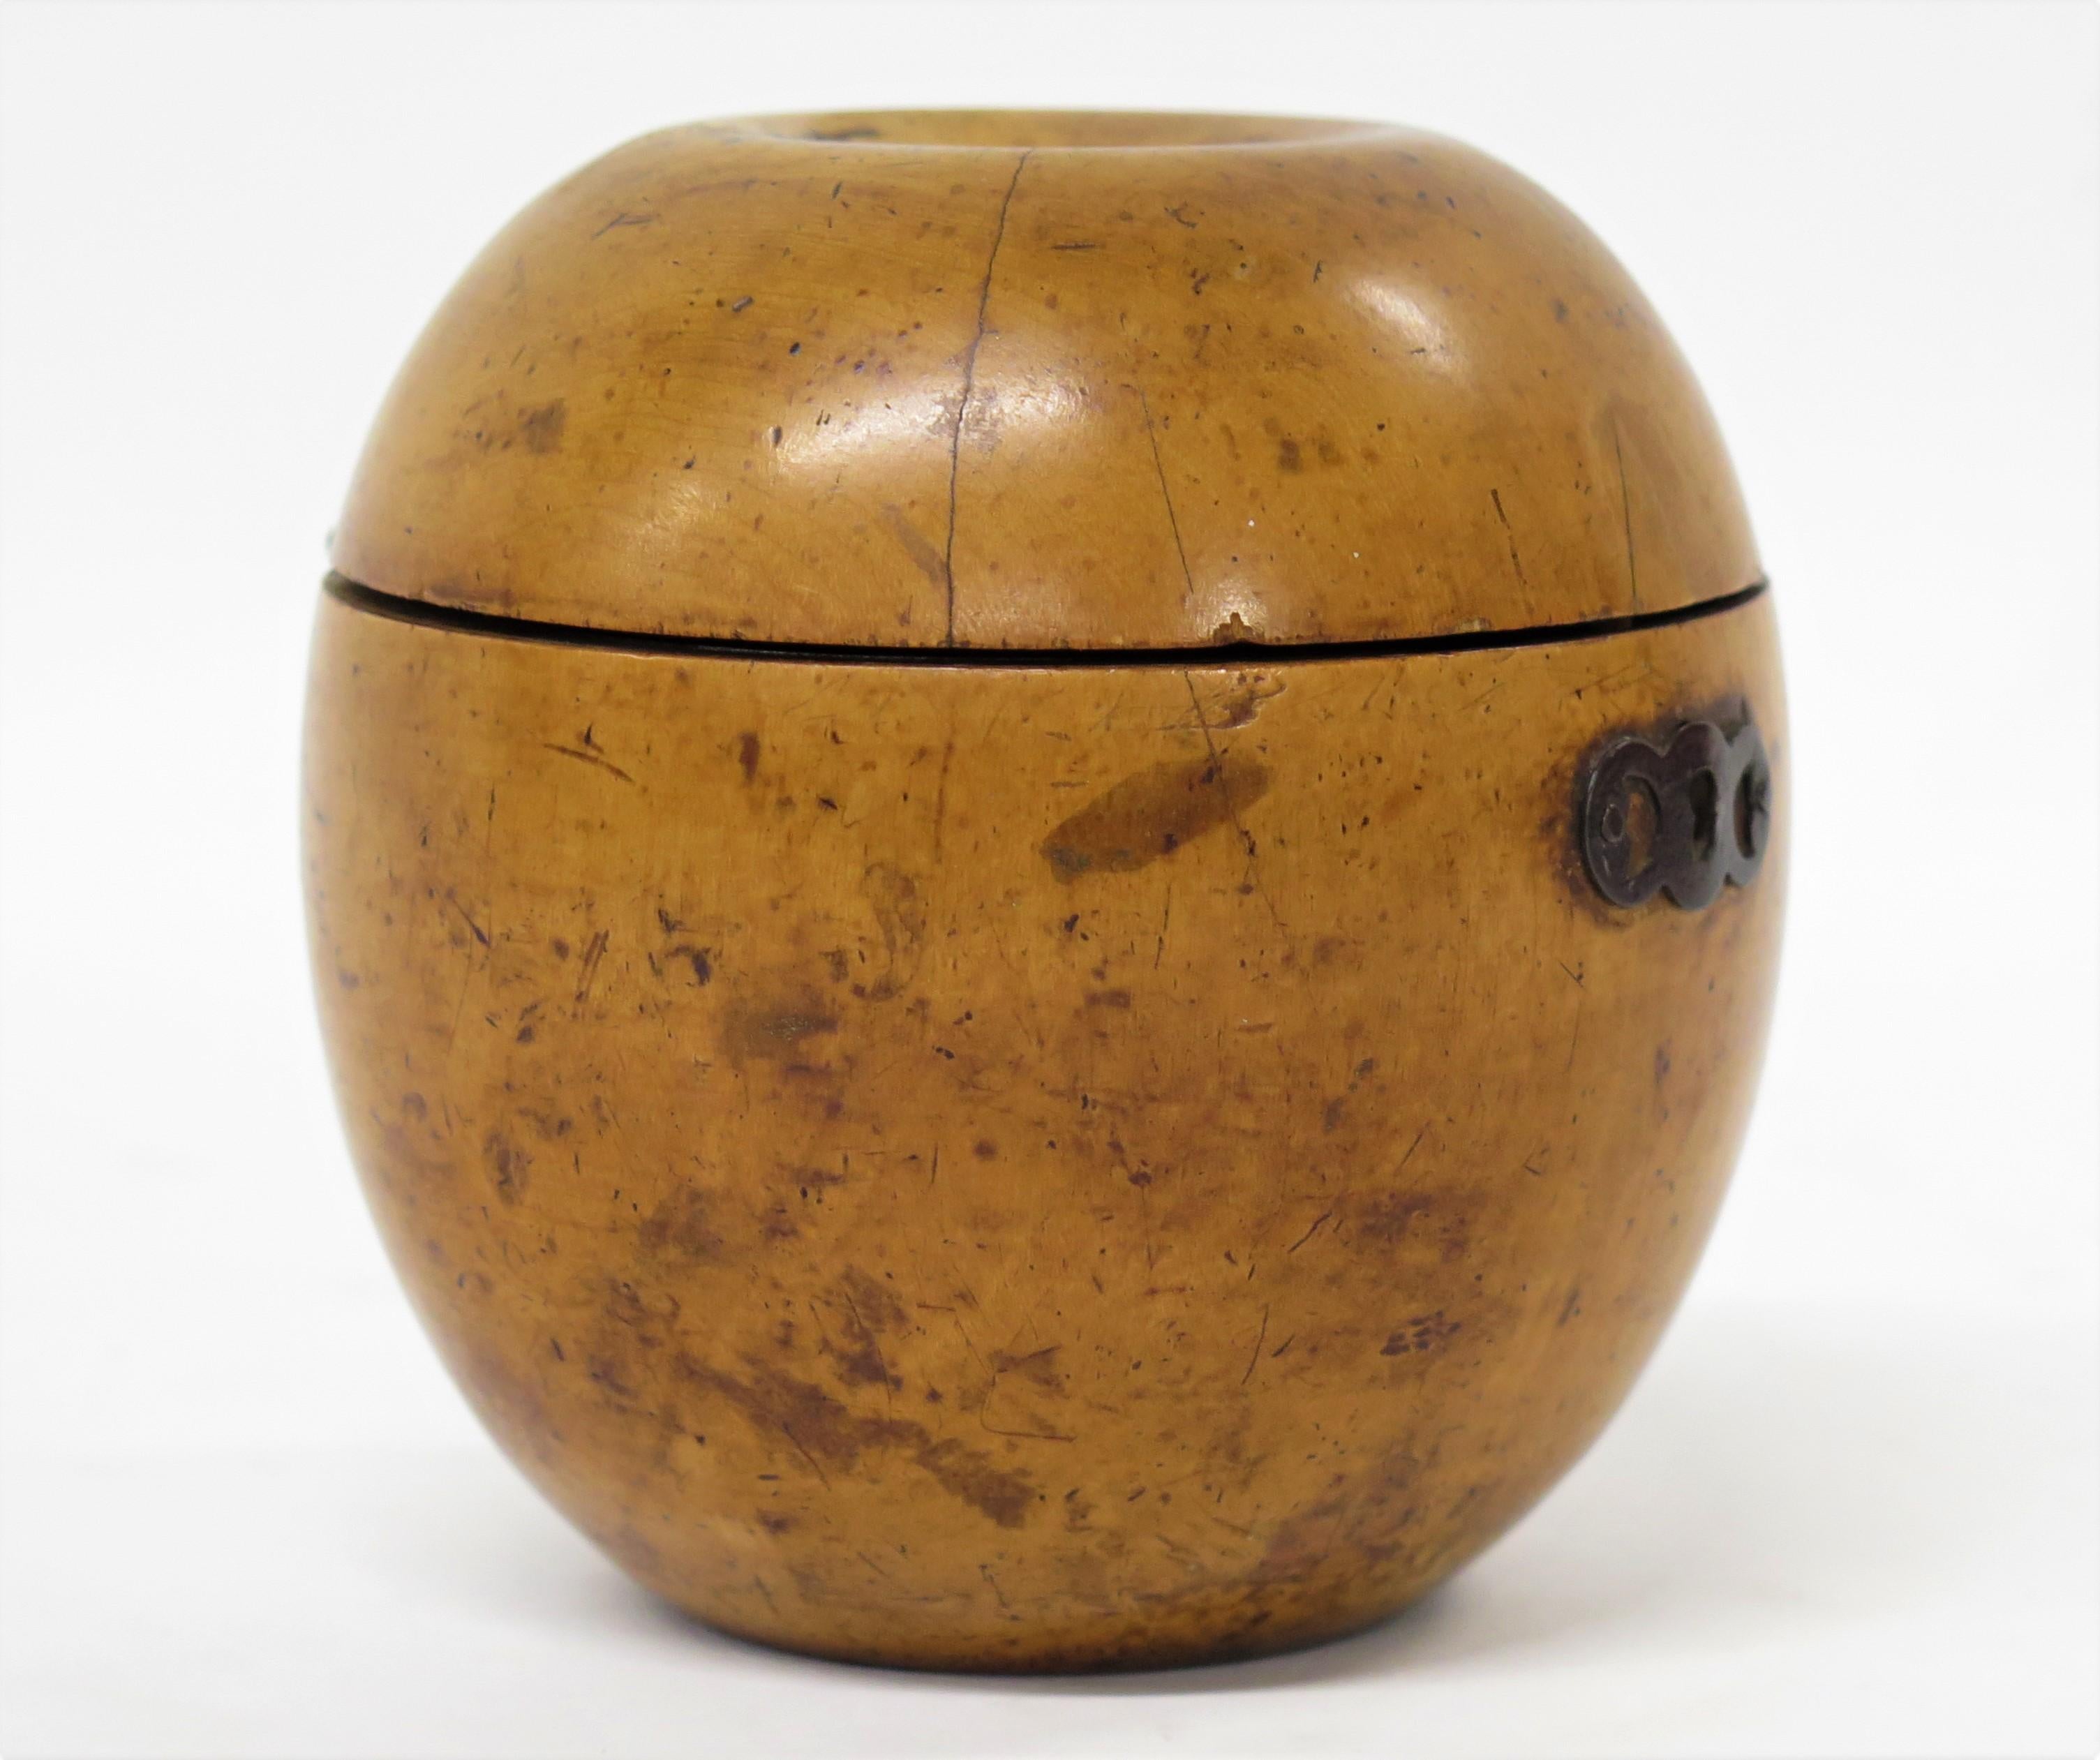 Une belle nouveauté en bois fruitier en forme de pomme. Tourné au tour et avec une patine miel douce, restauration au couvercle au niveau de la charnière. Angleterre, vers 1800